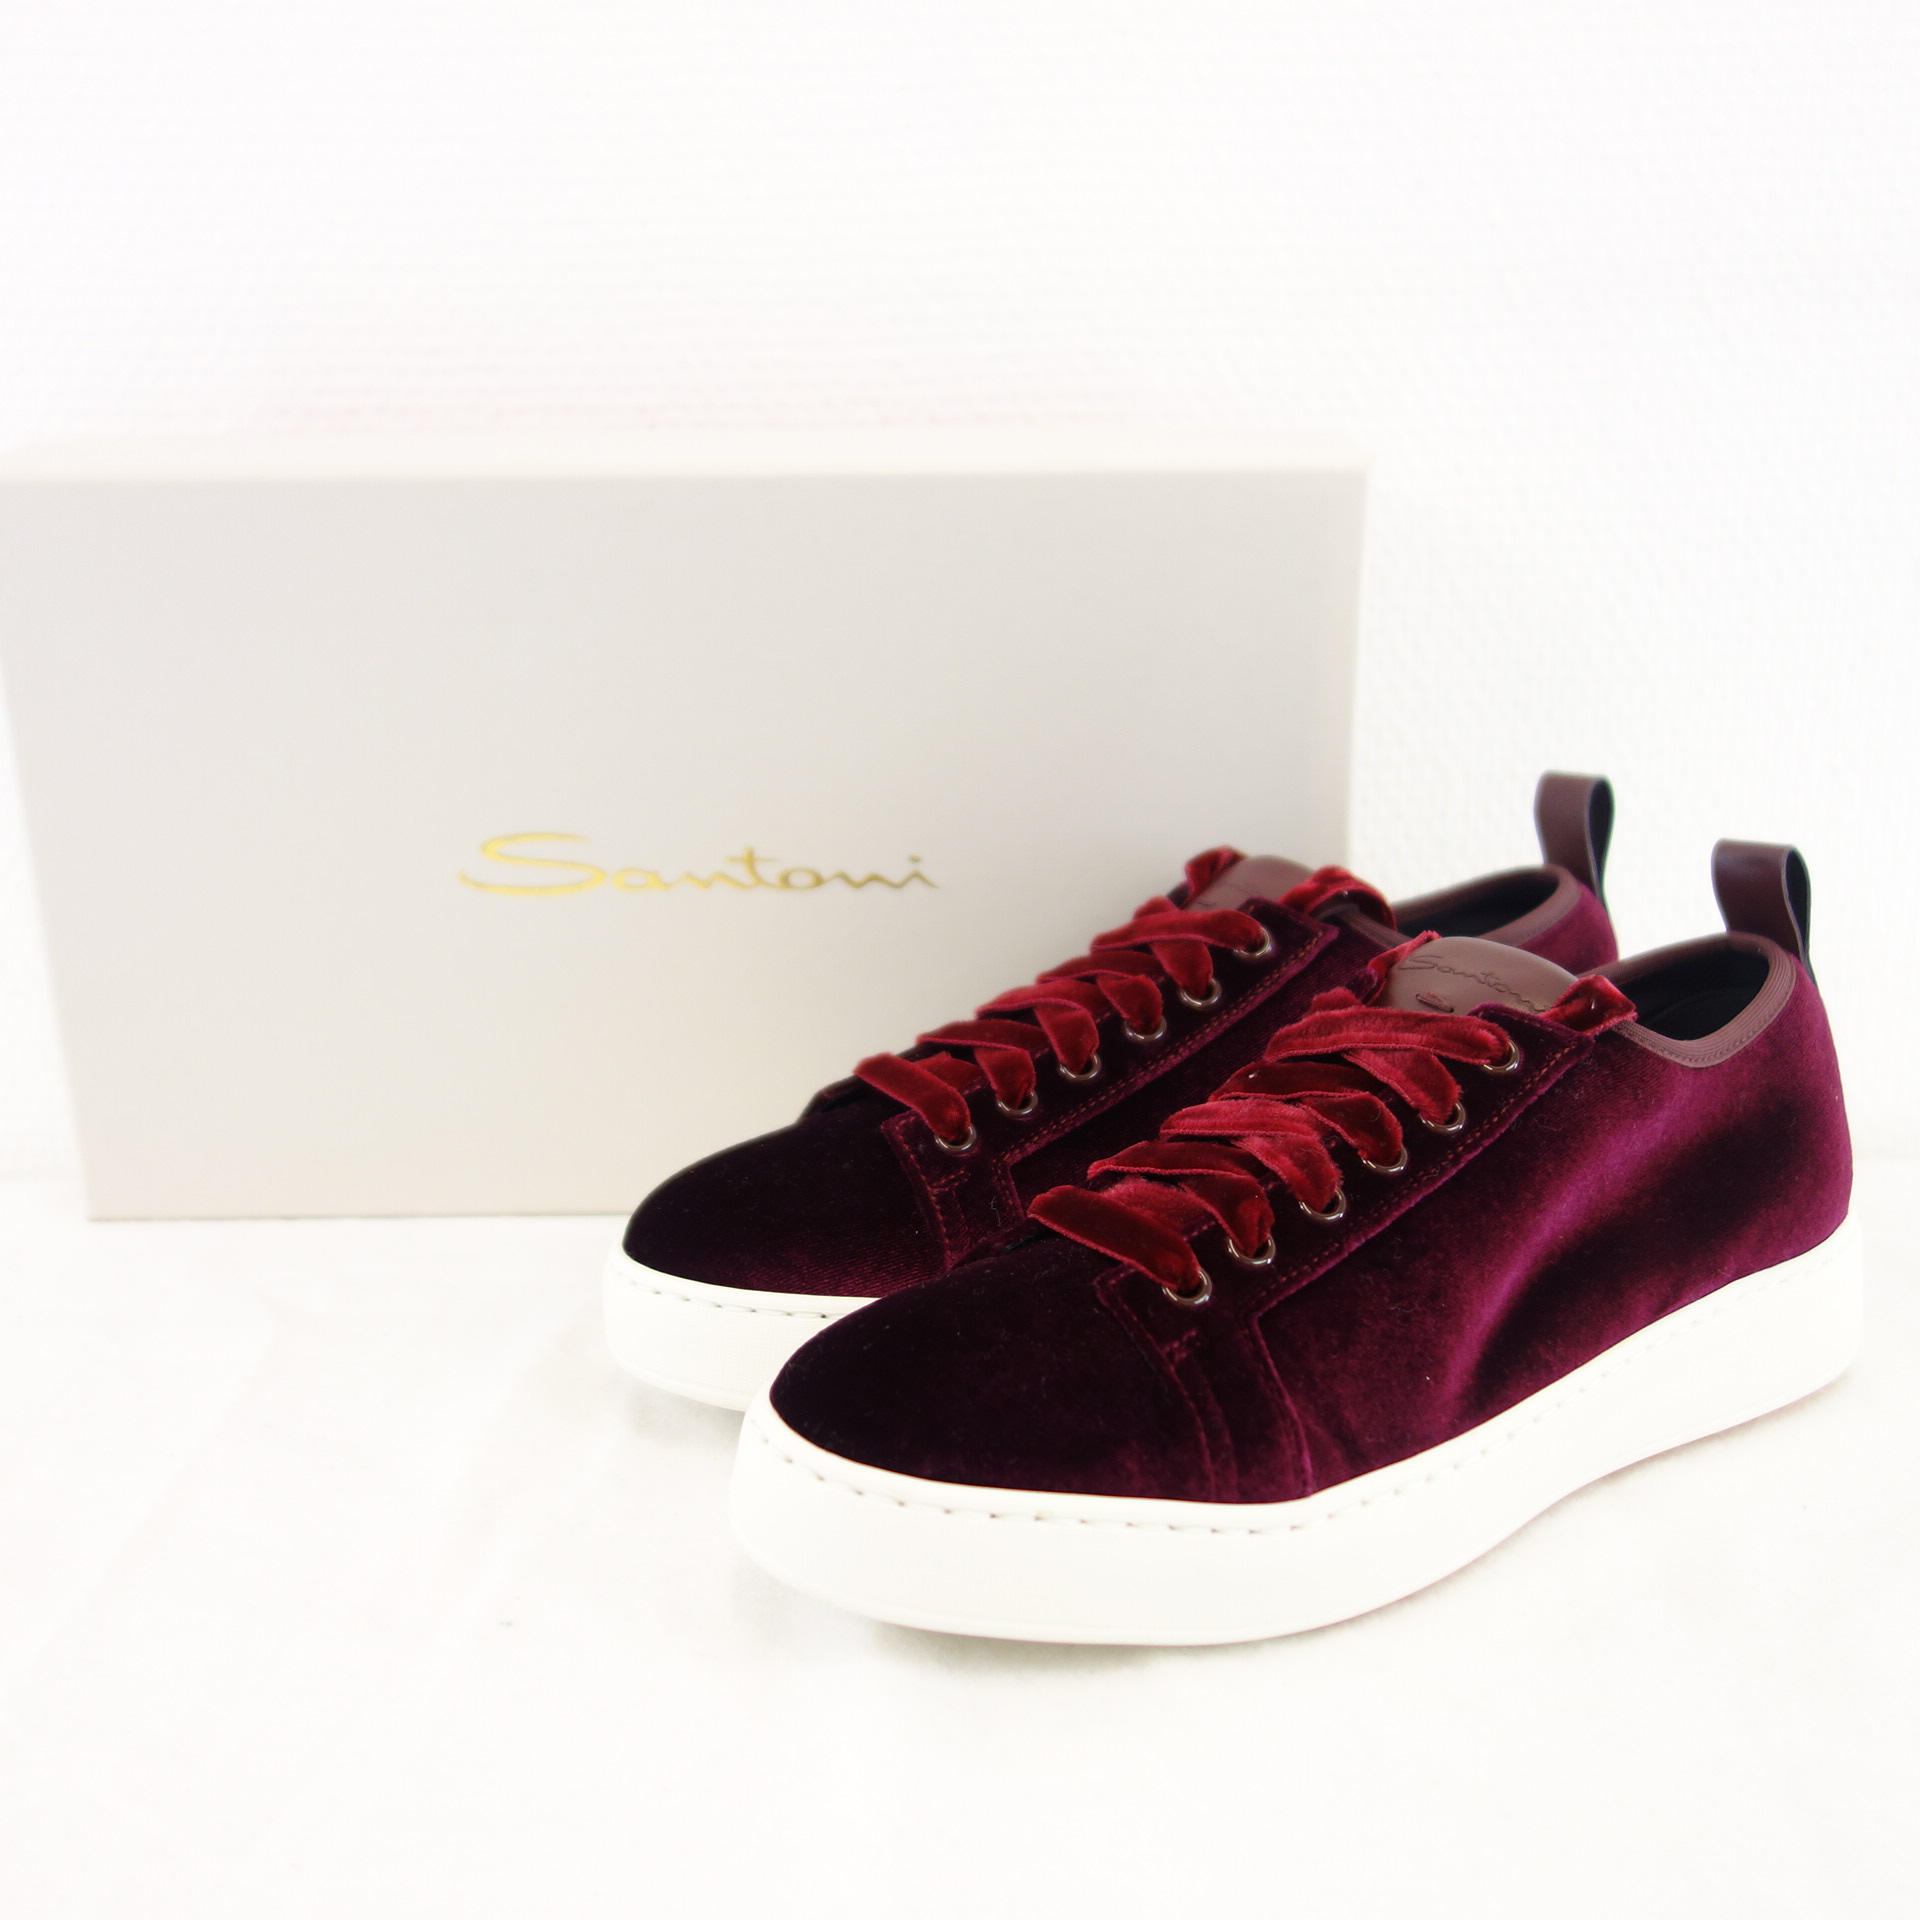 SANTONI Damen Schuhe Sportschuhe Low Top Sneaker Samt Bordeaux Rot